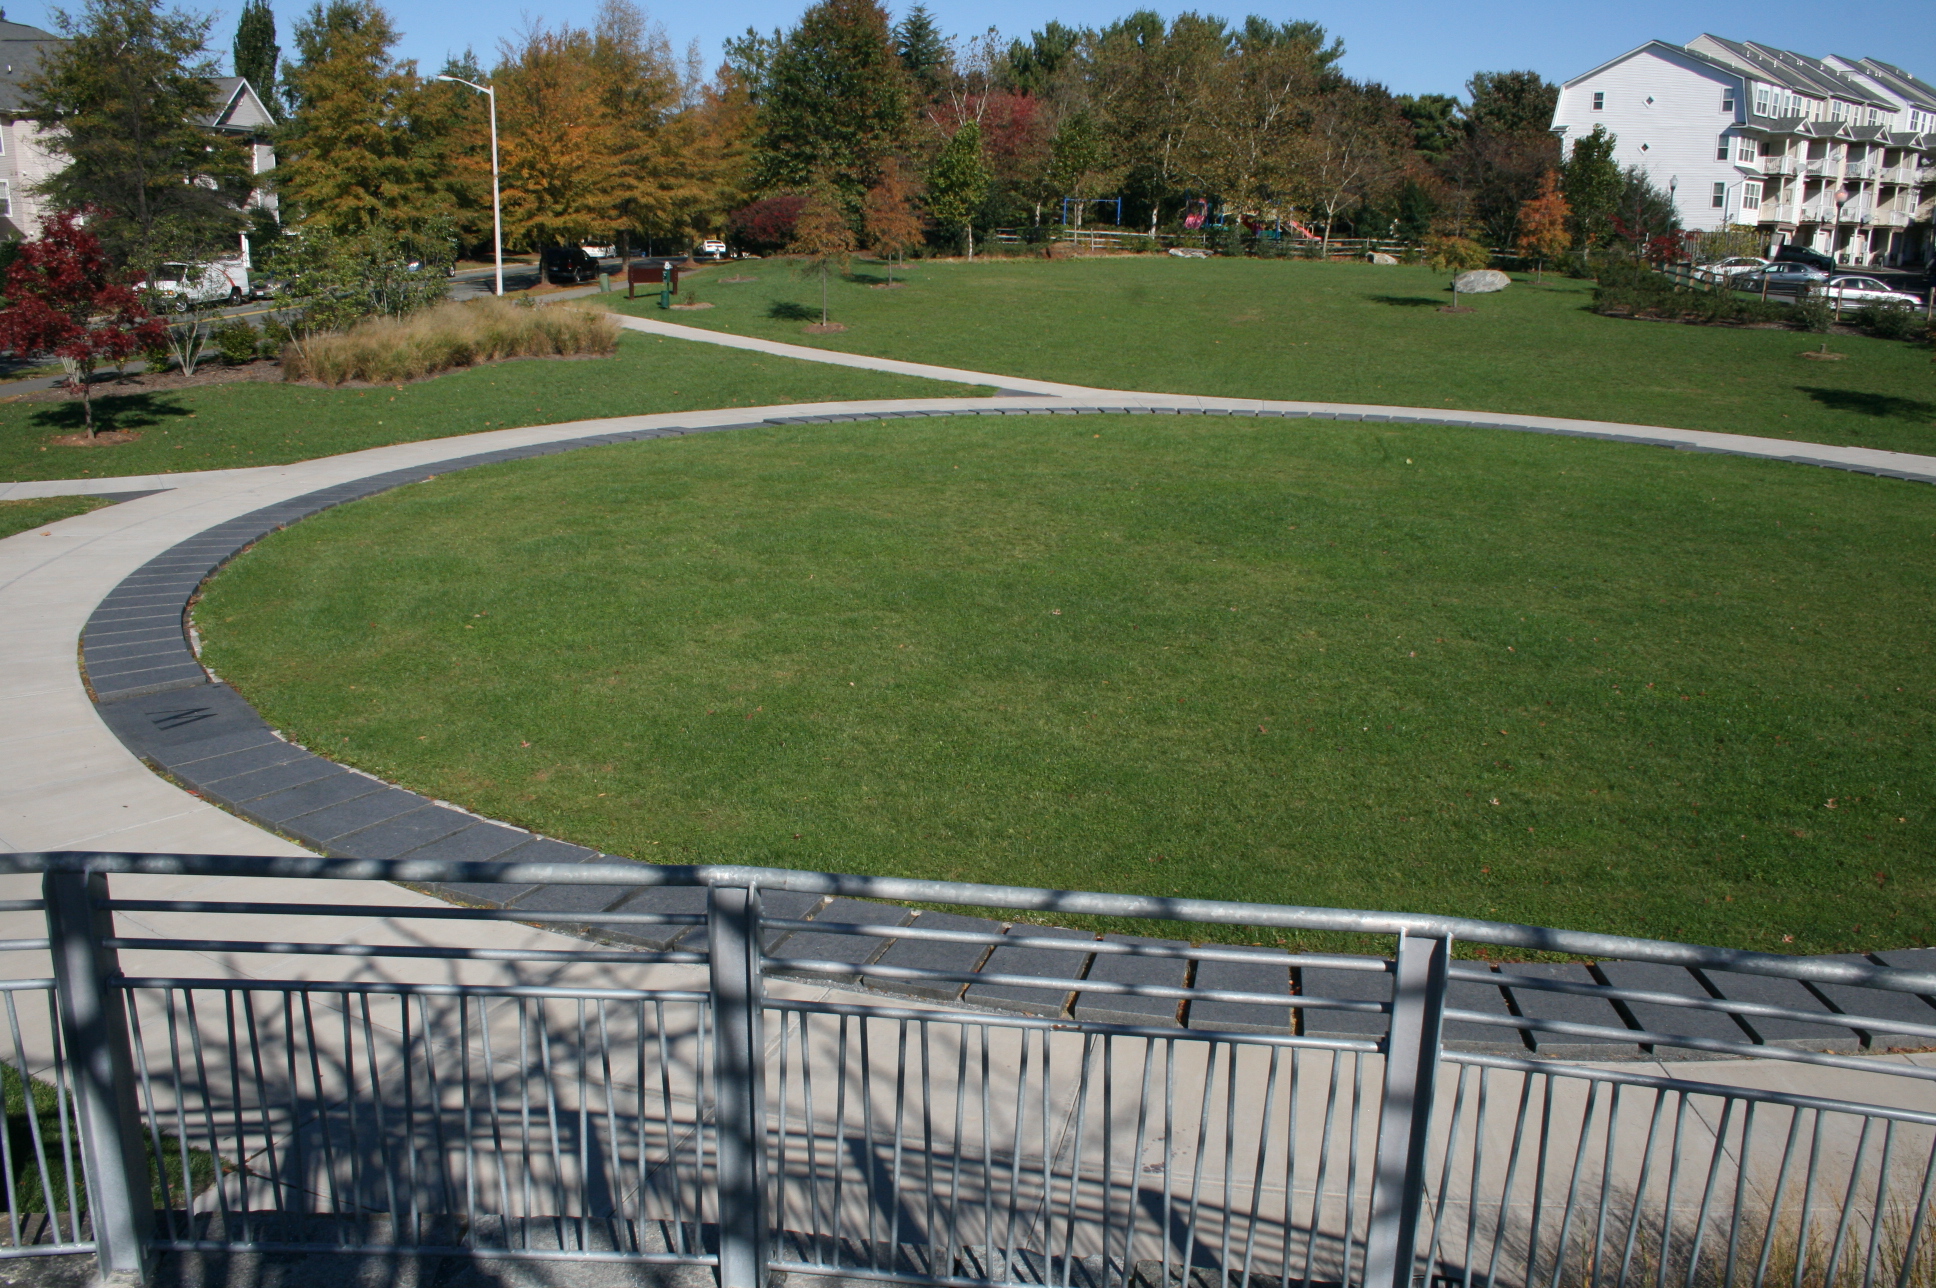 Vista of the park